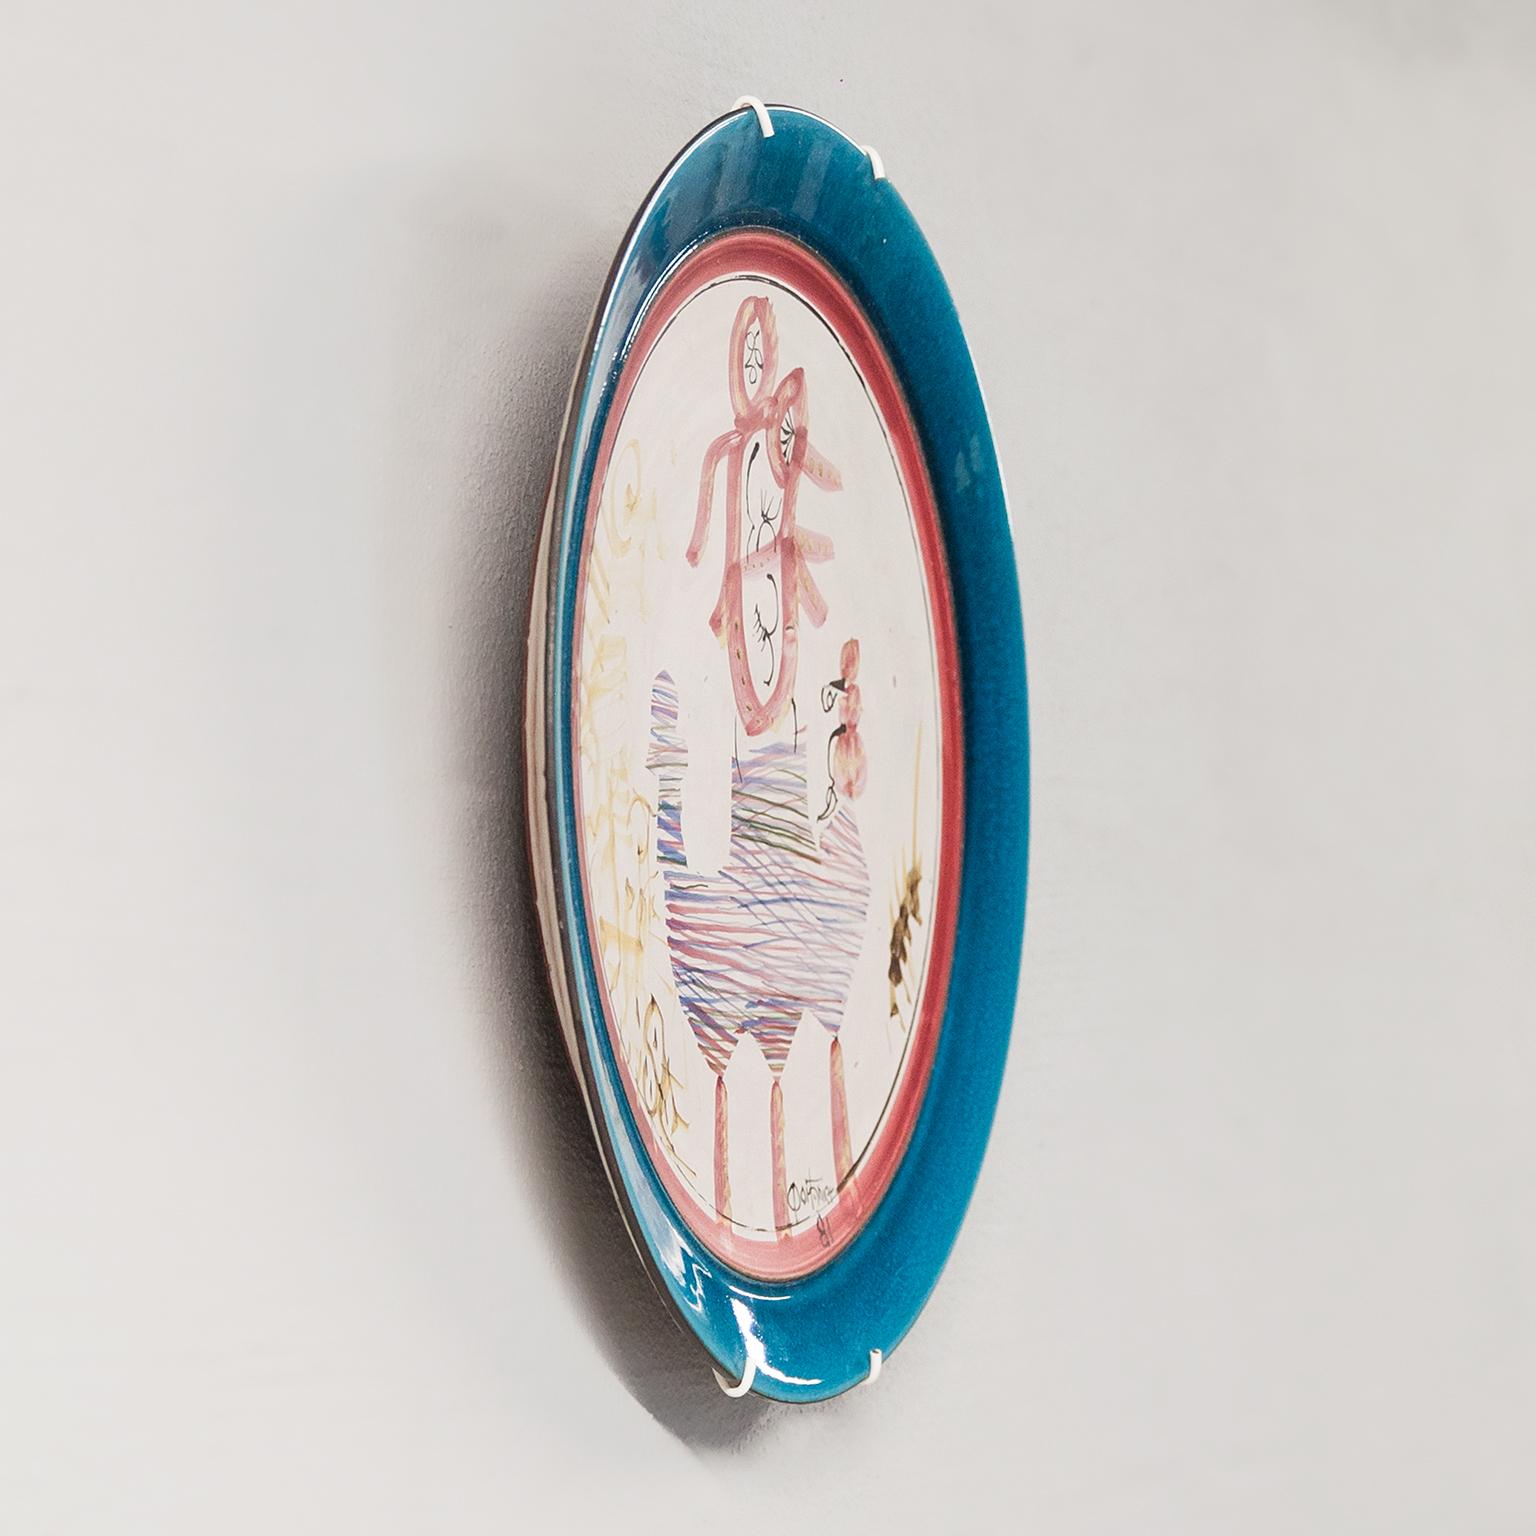 Eine seltene Gilbert PORTANIER geboren 1926 Keramik Teller / Schale mit einem Design von einem abstrakten polychrome gemalt Inspiration in der Mitte, hellblau umgeben und roten Rand. Einzigartiges Stück. Monogrammiert mit Portanier 1981.